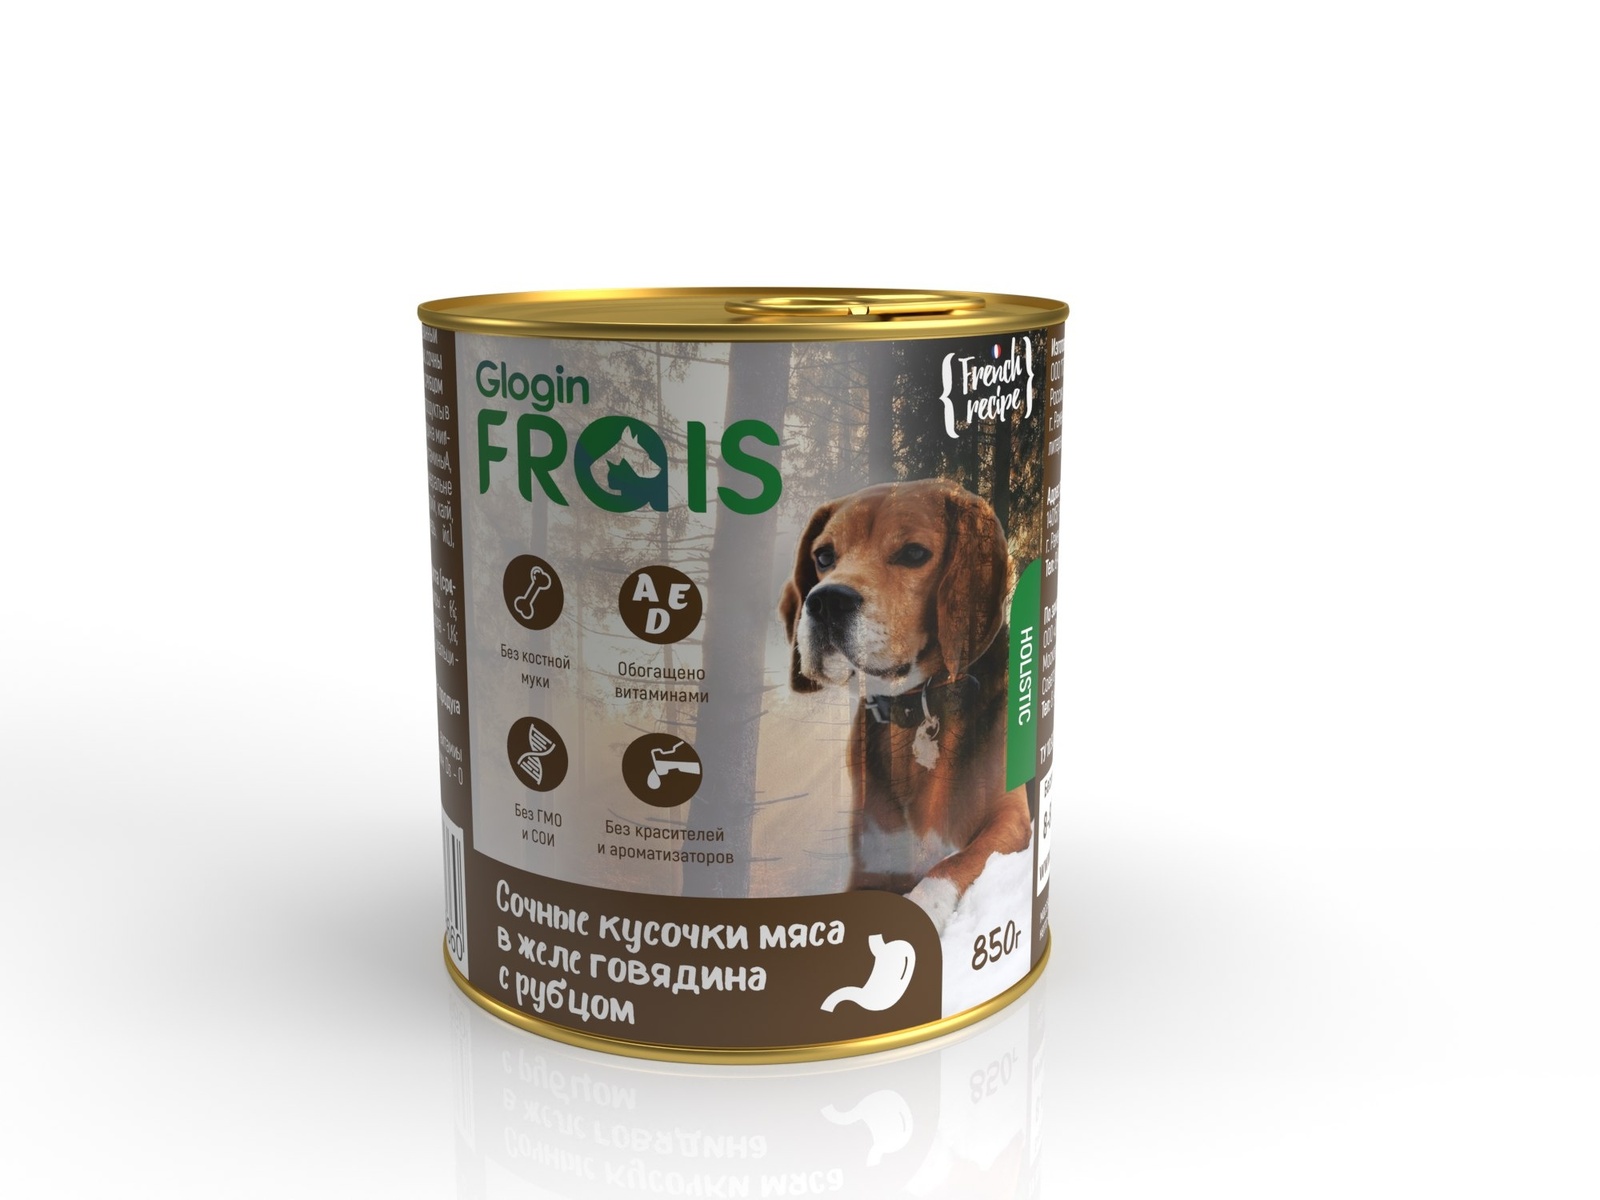 Frais Frais консервы для собак мясные кусочки в желе, с говядиной и рубцом (850 г) дог ланч консервы для собак говядина с рубцом и печенью в желе 2960160863 0 75 кг 19039 2 шт